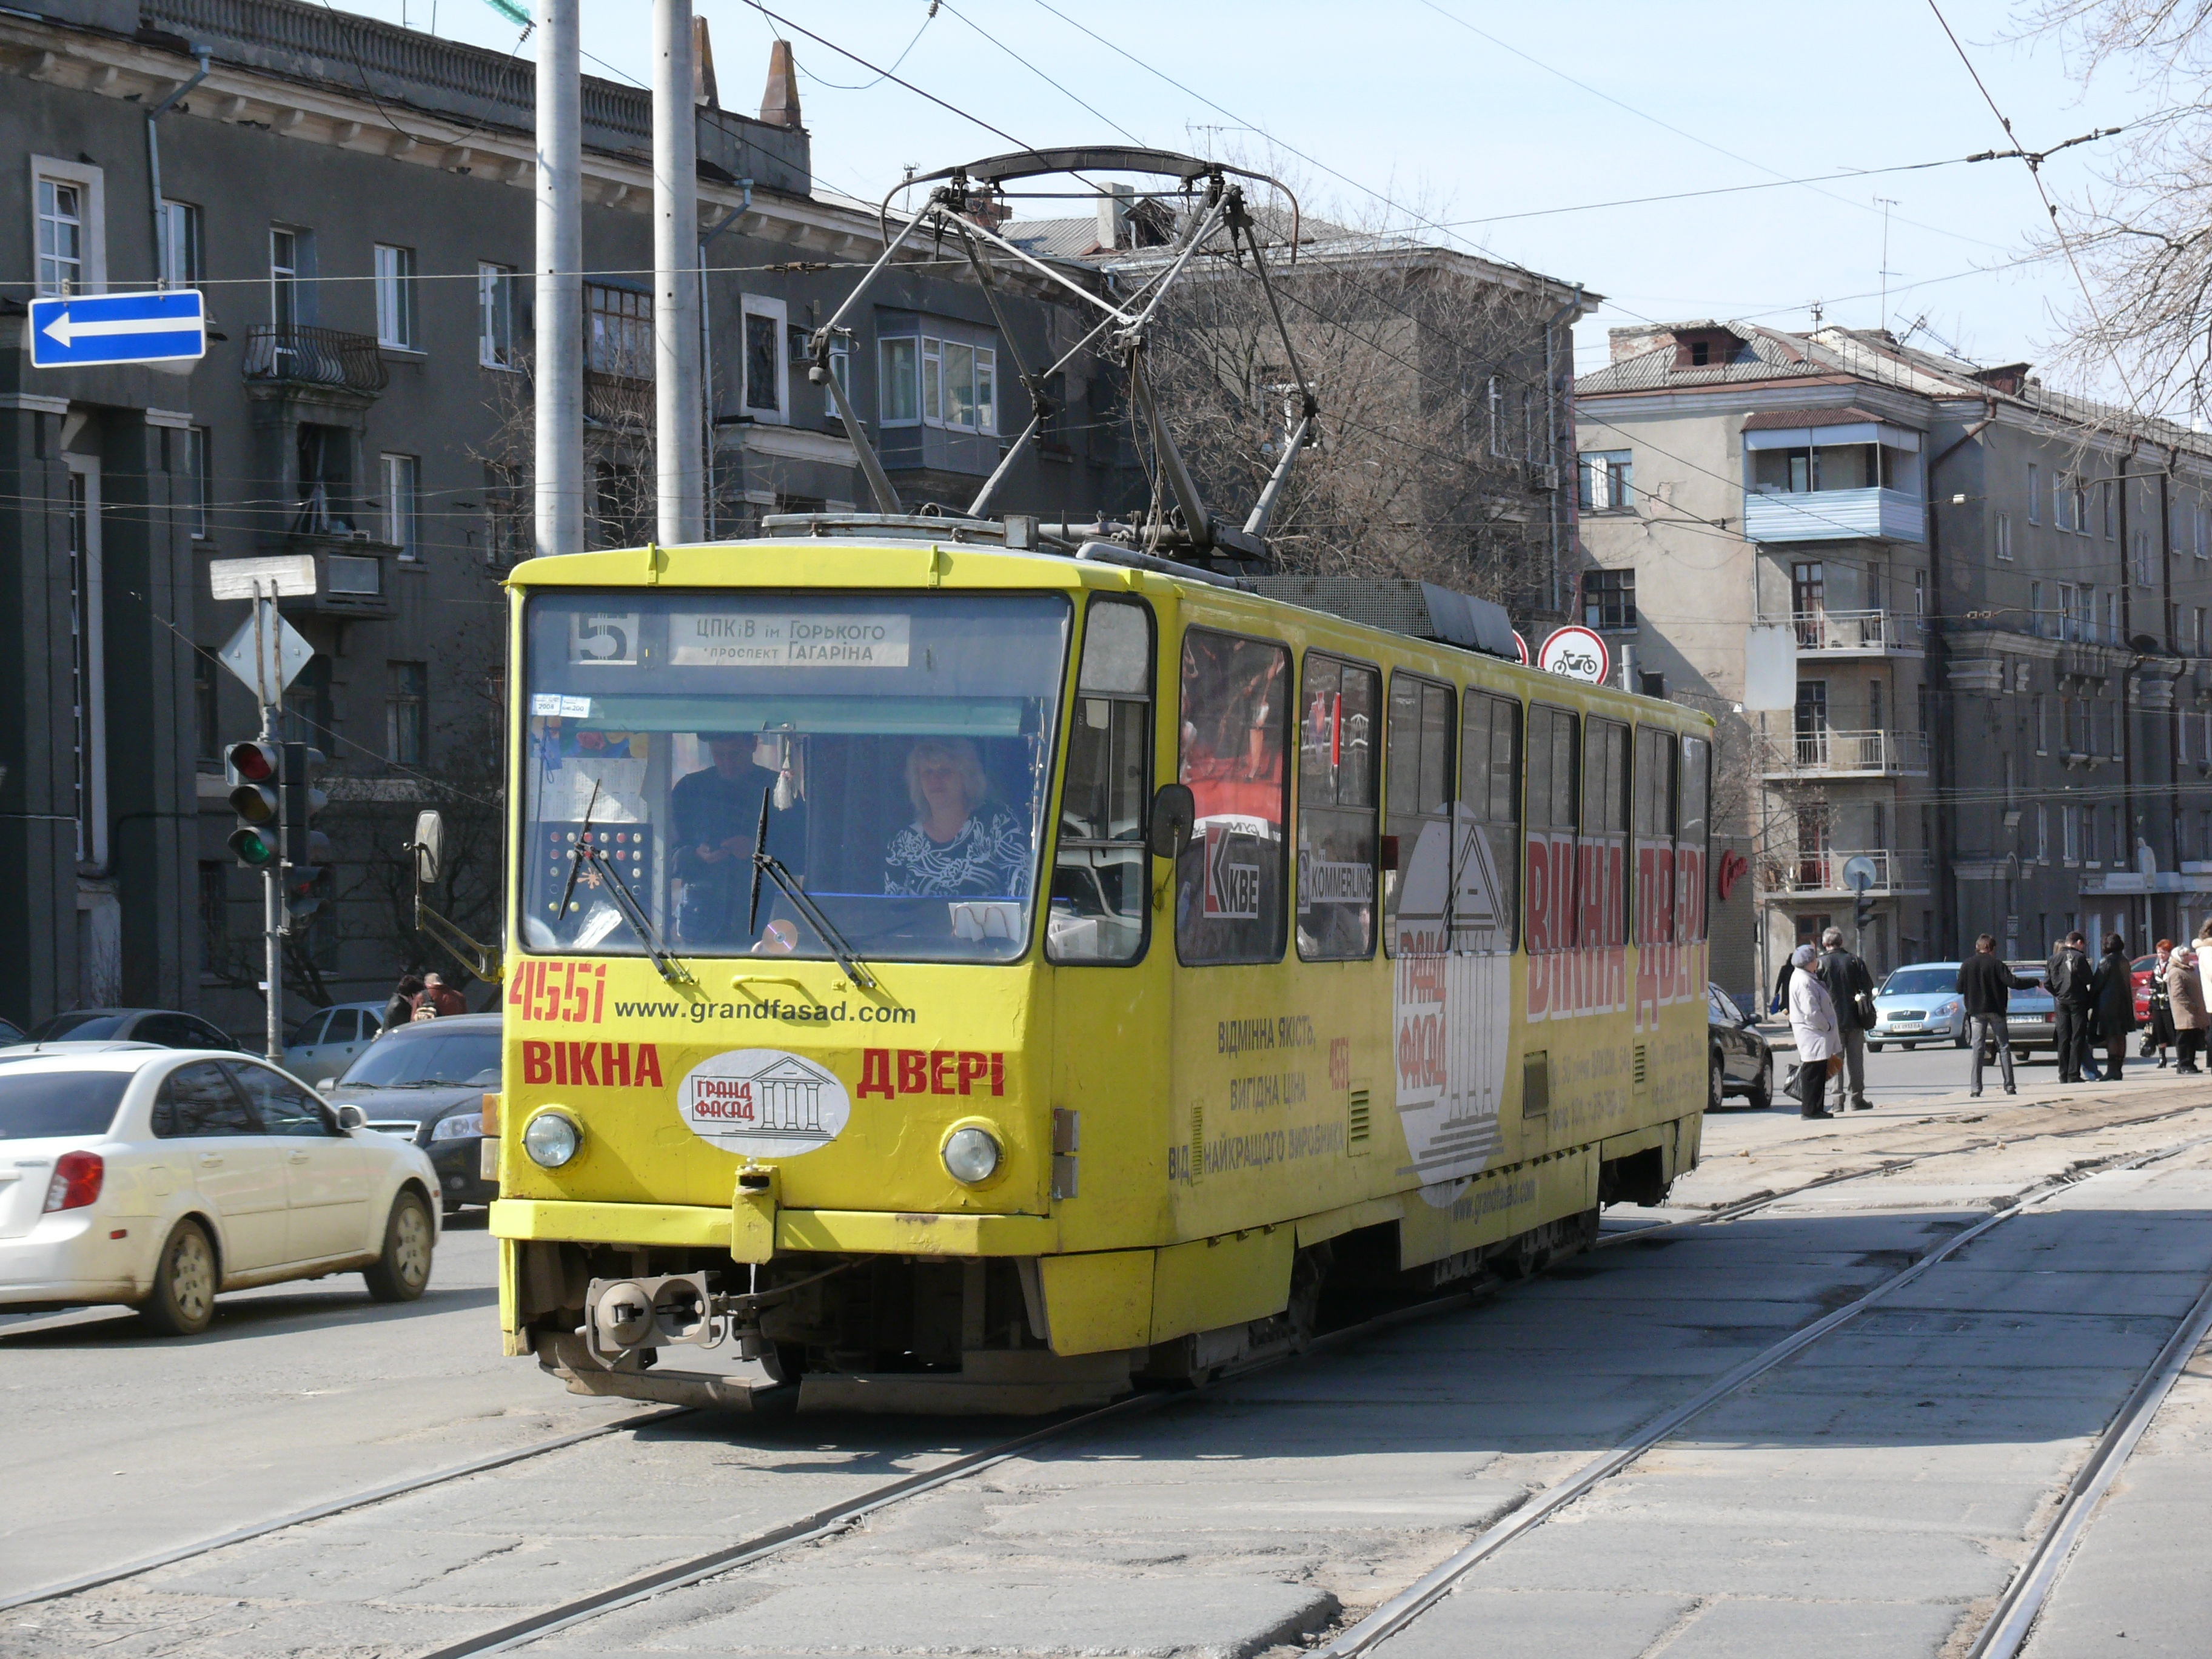 Kharkov tram 4551